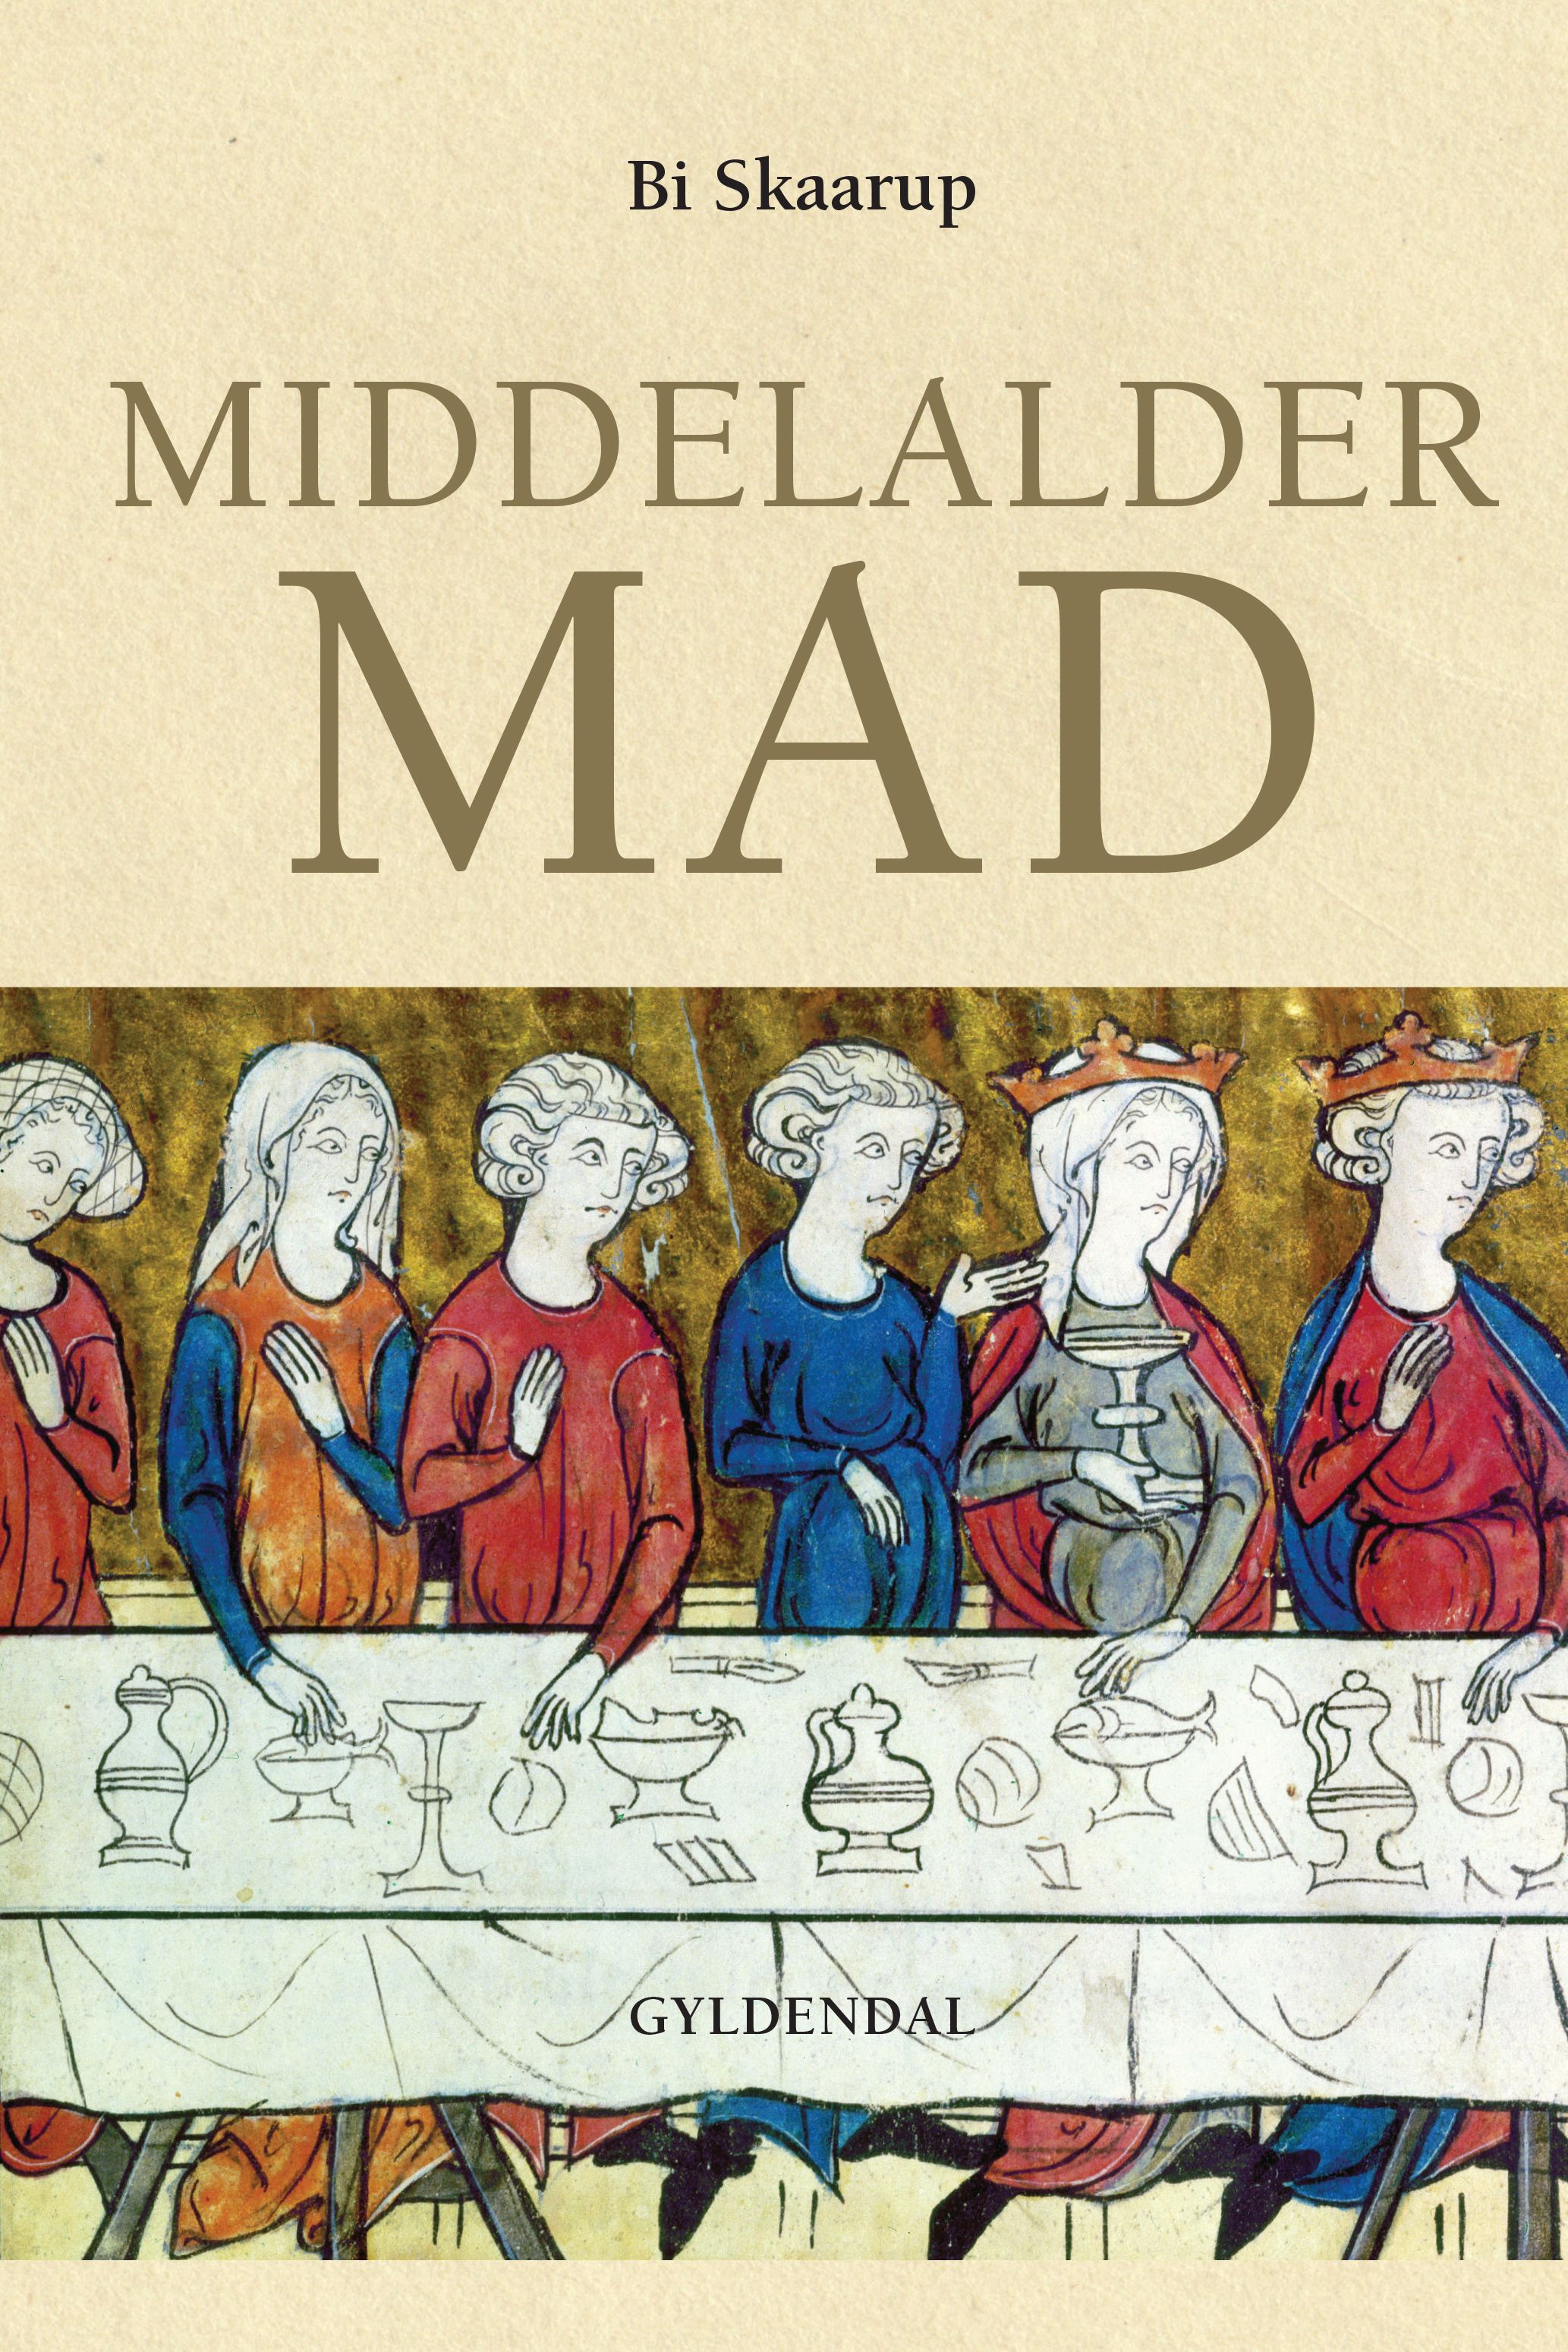 Middelaldermad, eBook by Bi Skaarup